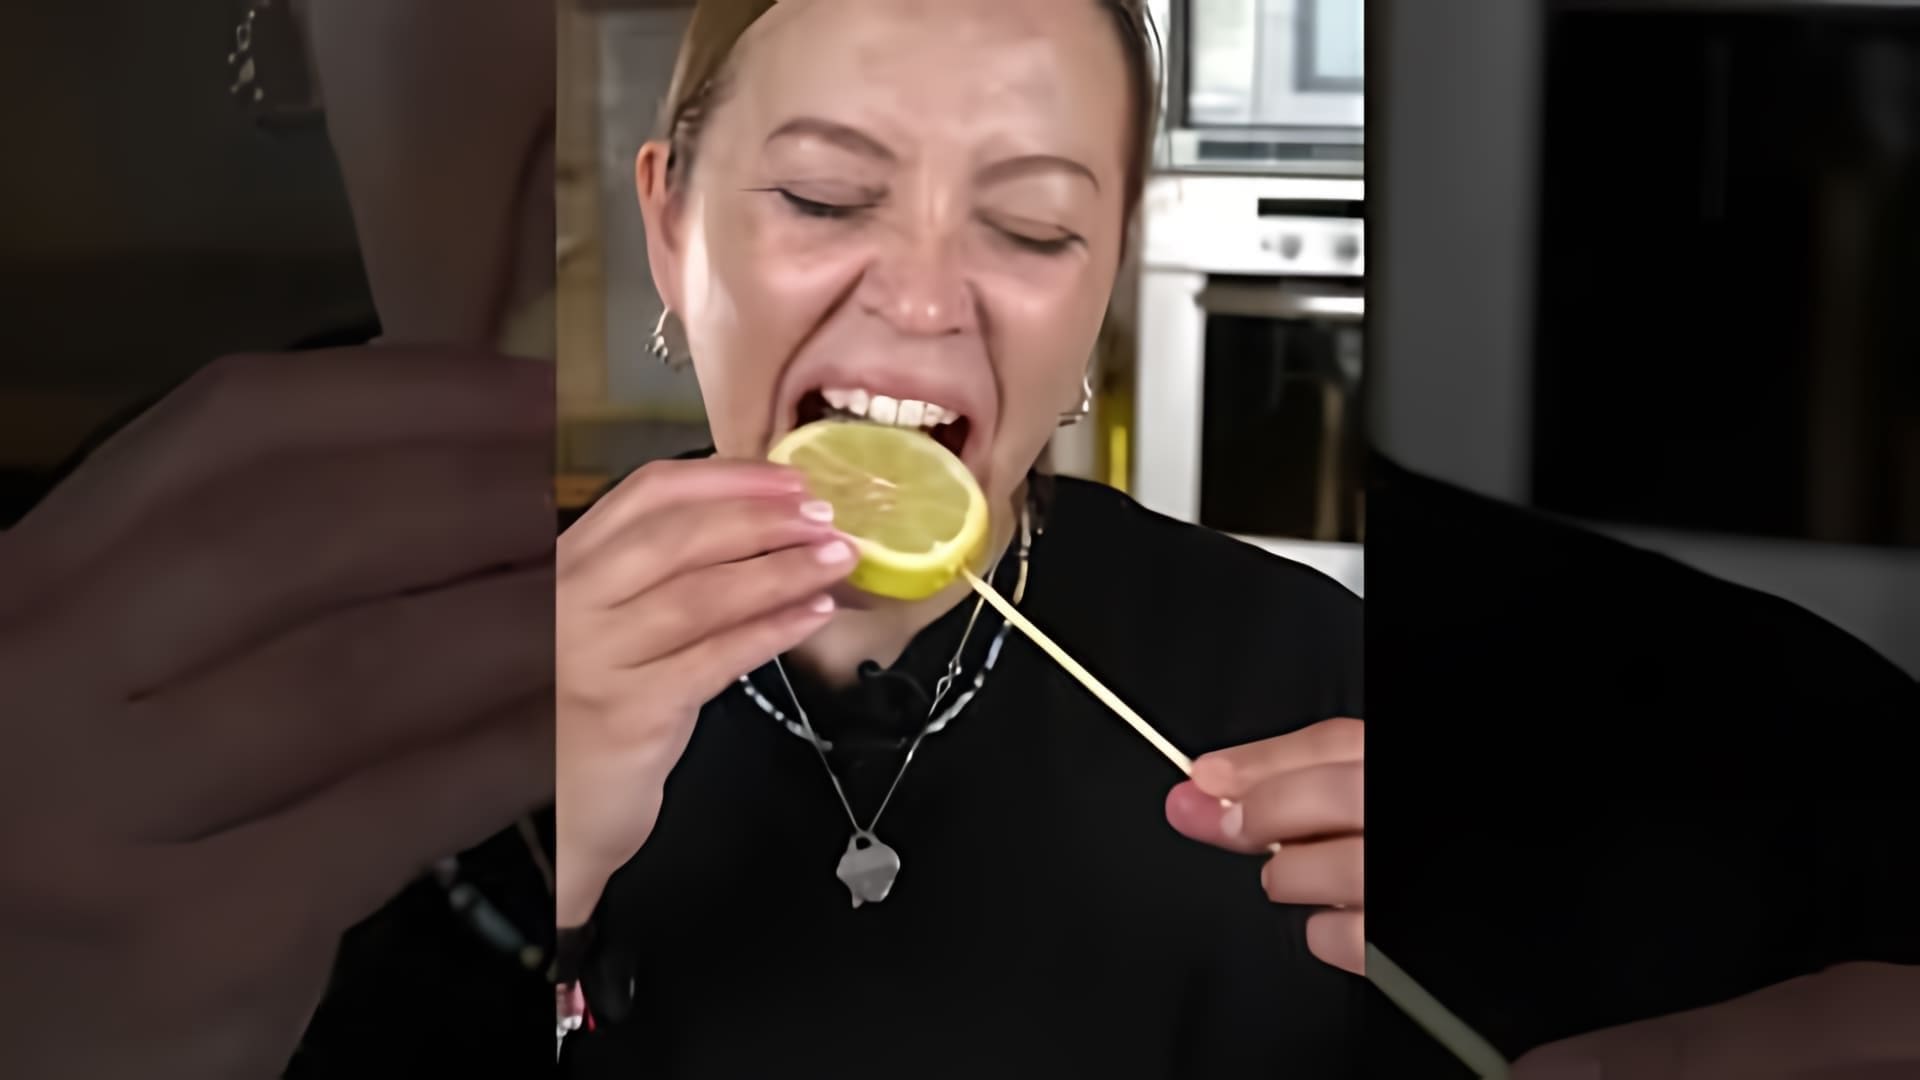 Три лимона НА СПОР! Стеклянный челлендж!

В этом видео-ролике мы увидим, как люди бросают три лимона на стеклянную поверхность и пытаются их разбить